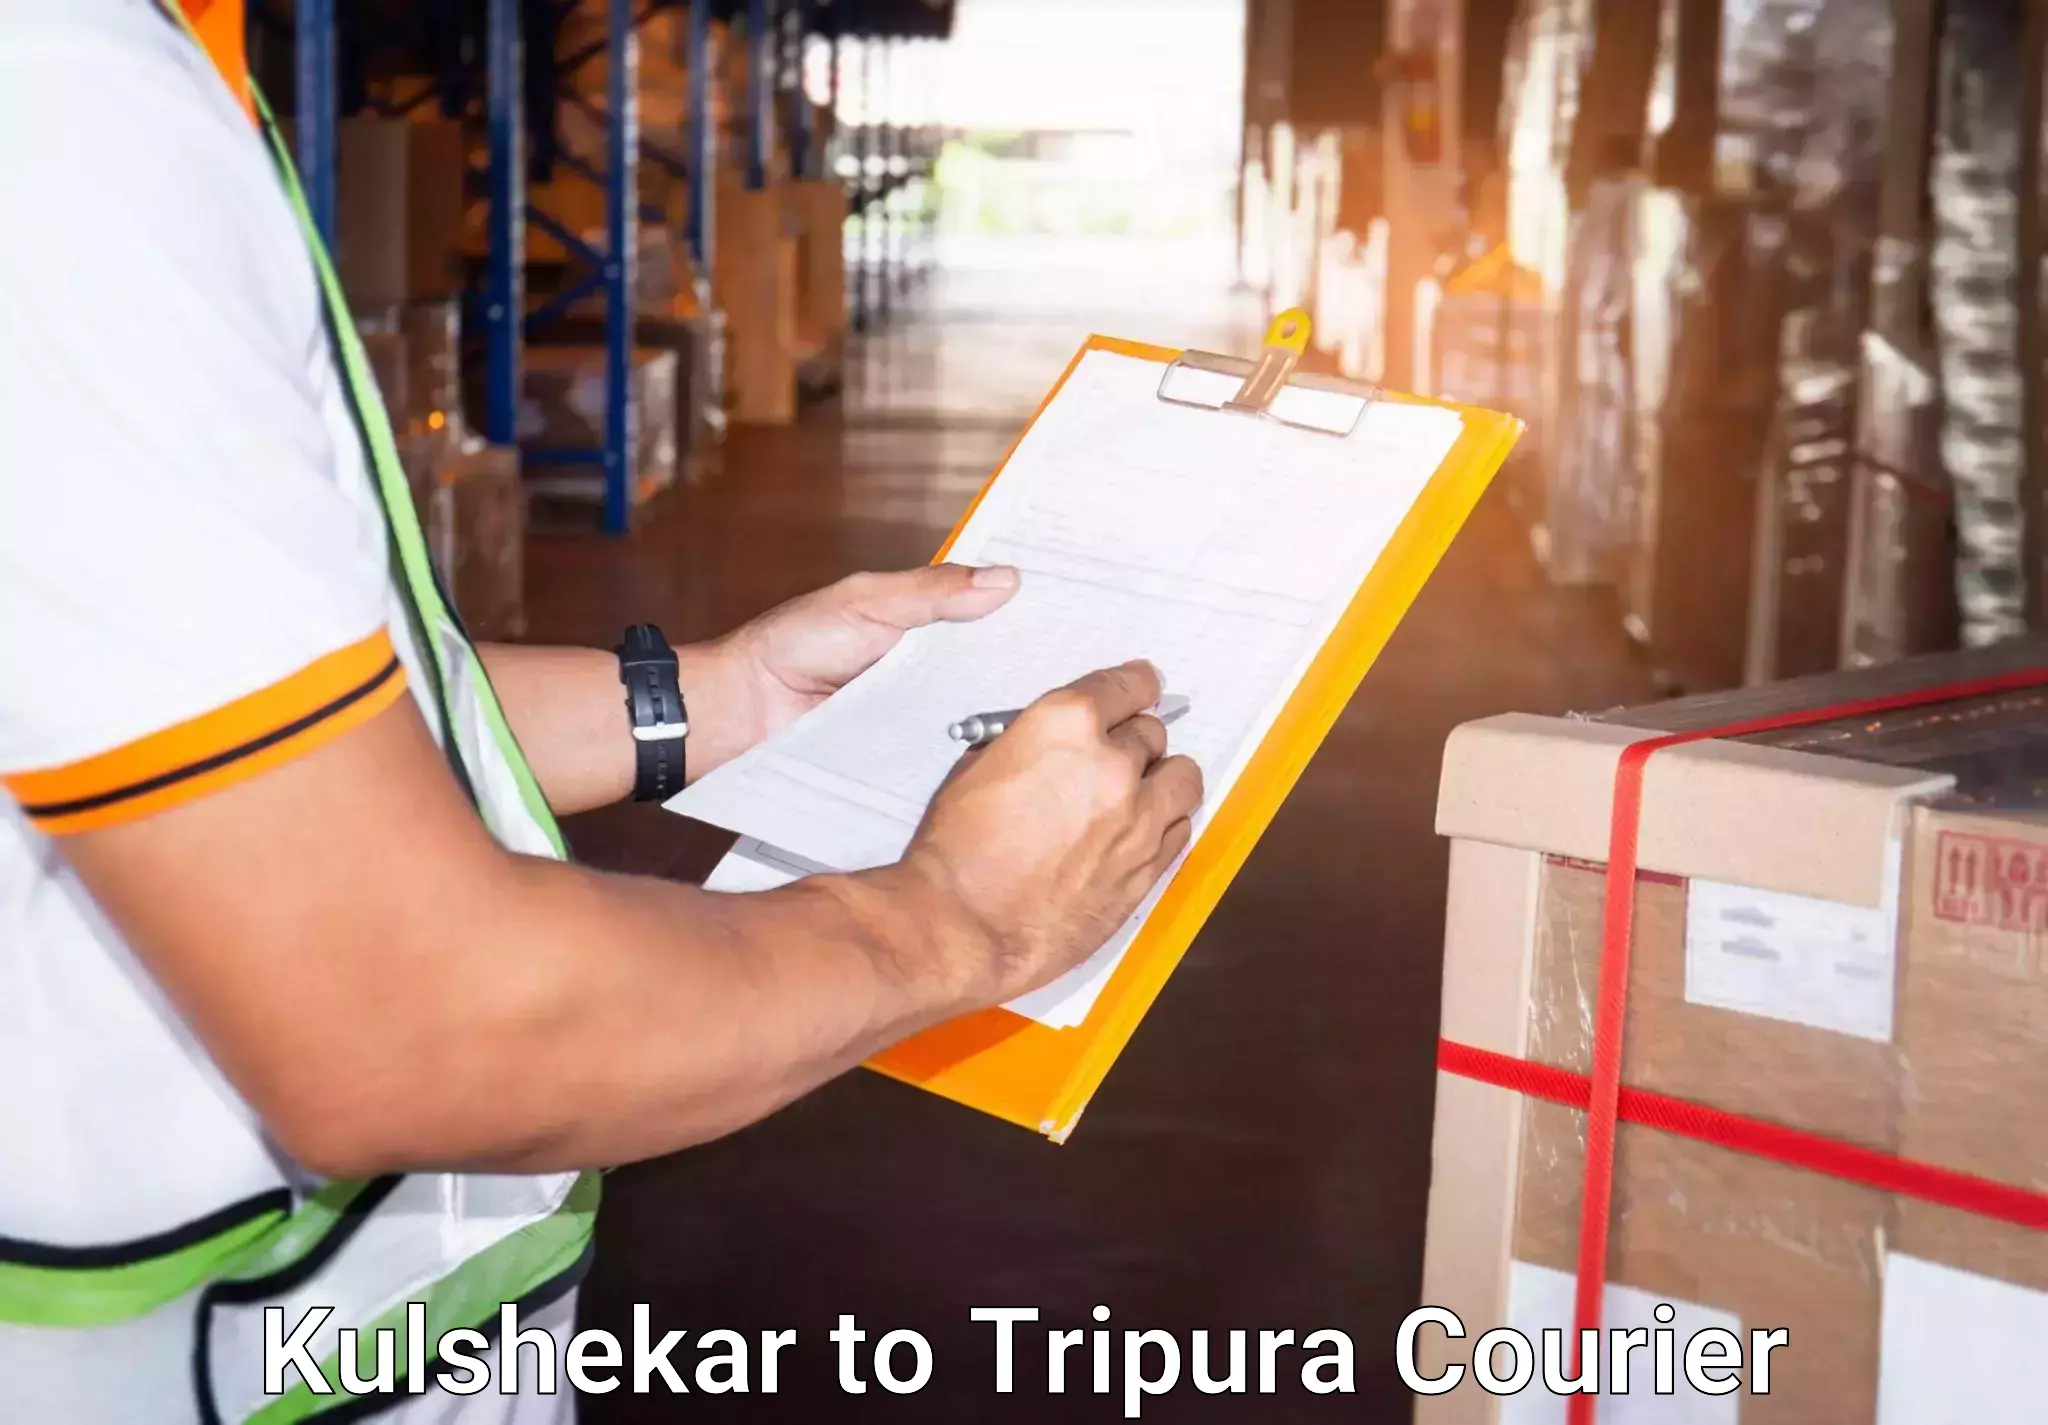 Premium luggage delivery Kulshekar to Udaipur Tripura